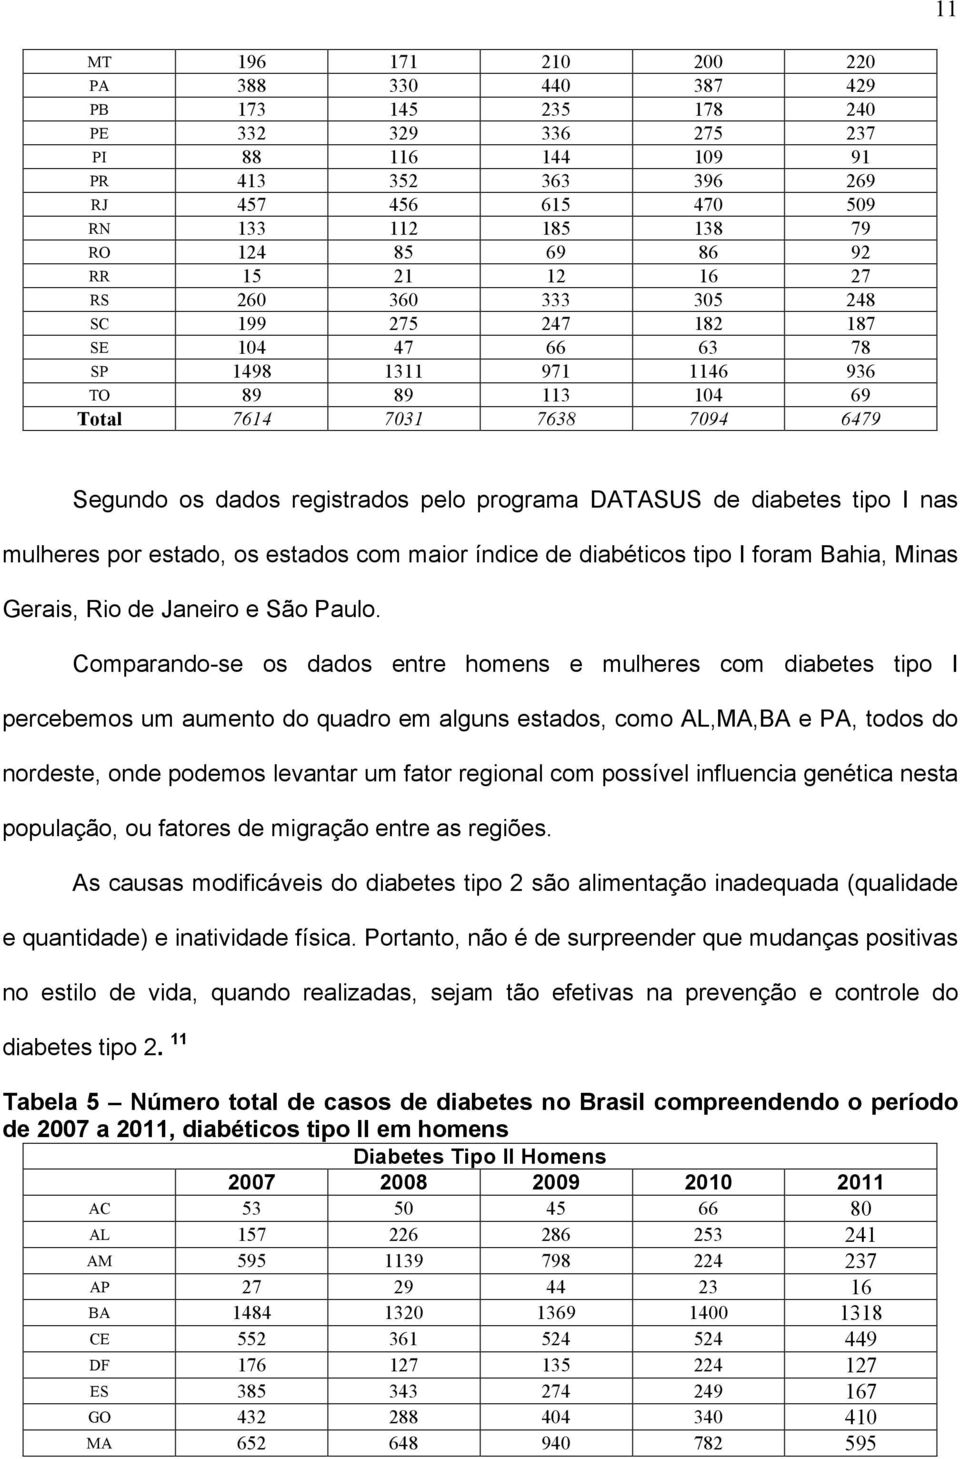 programa DATASUS de diabetes tipo I nas mulheres por estado, os estados com maior índice de diabéticos tipo I foram Bahia, Minas Gerais, Rio de Janeiro e São Paulo.